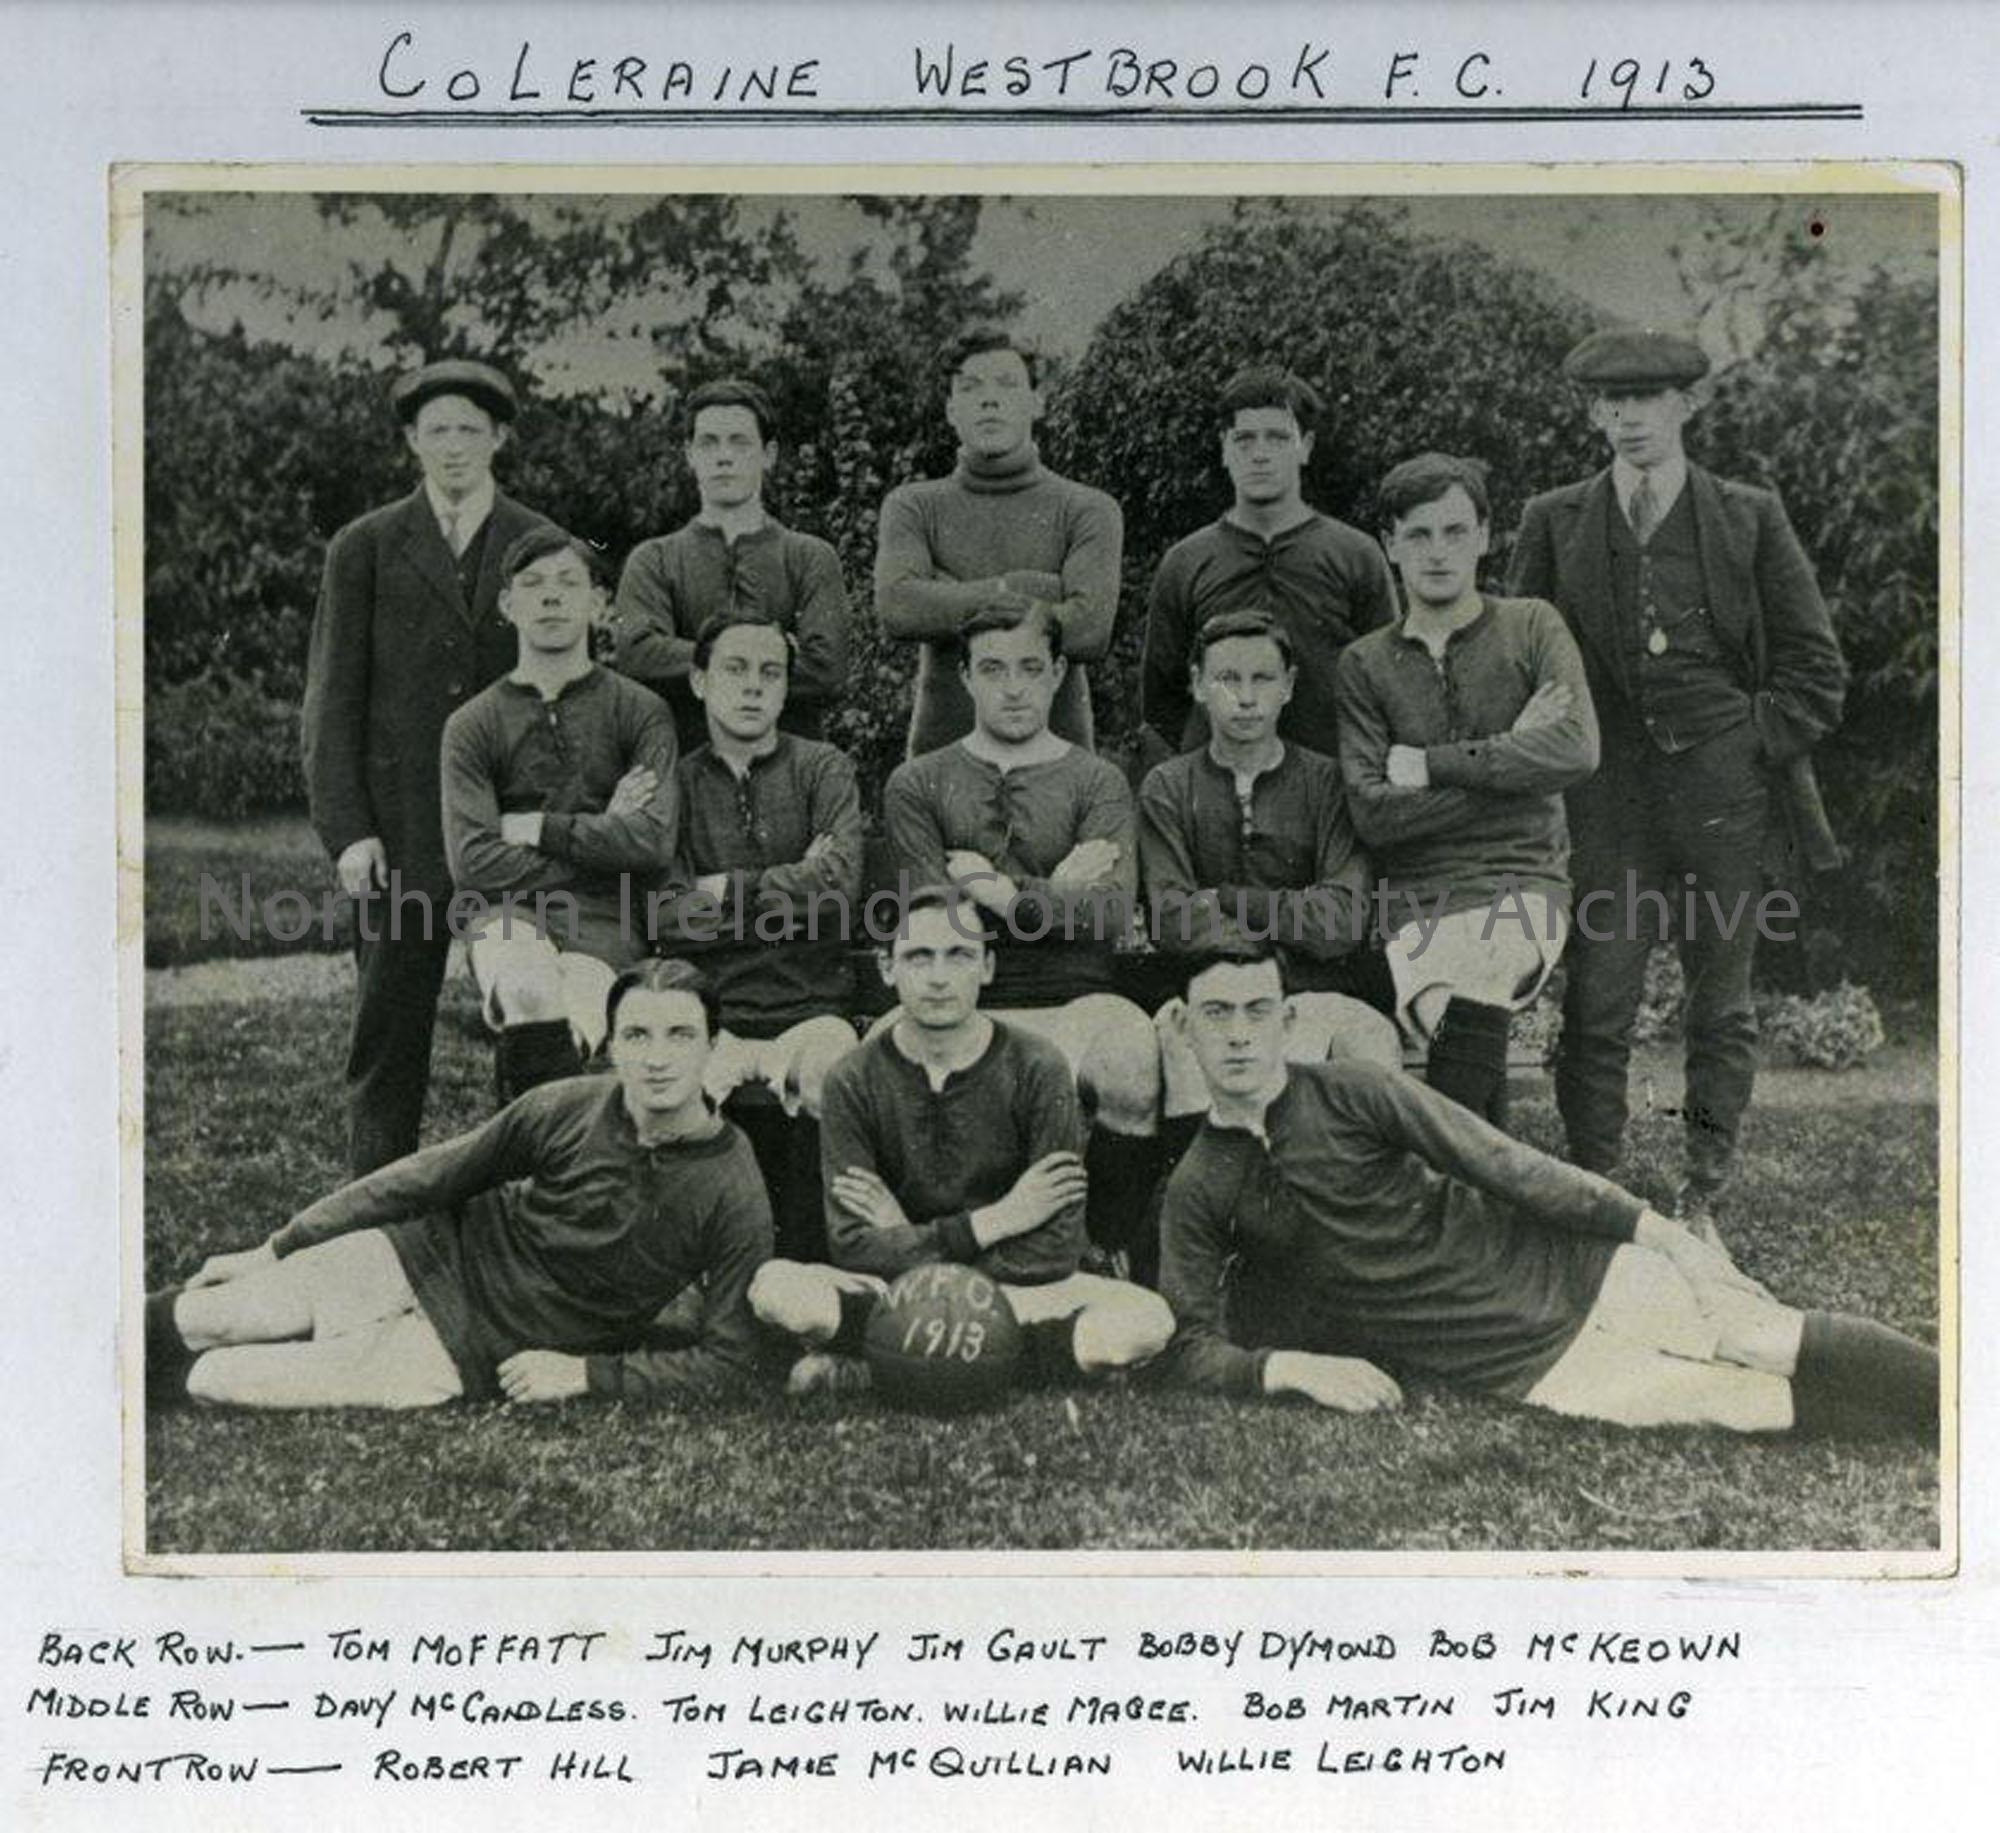 Coleraine Westbrook Football Club 1913